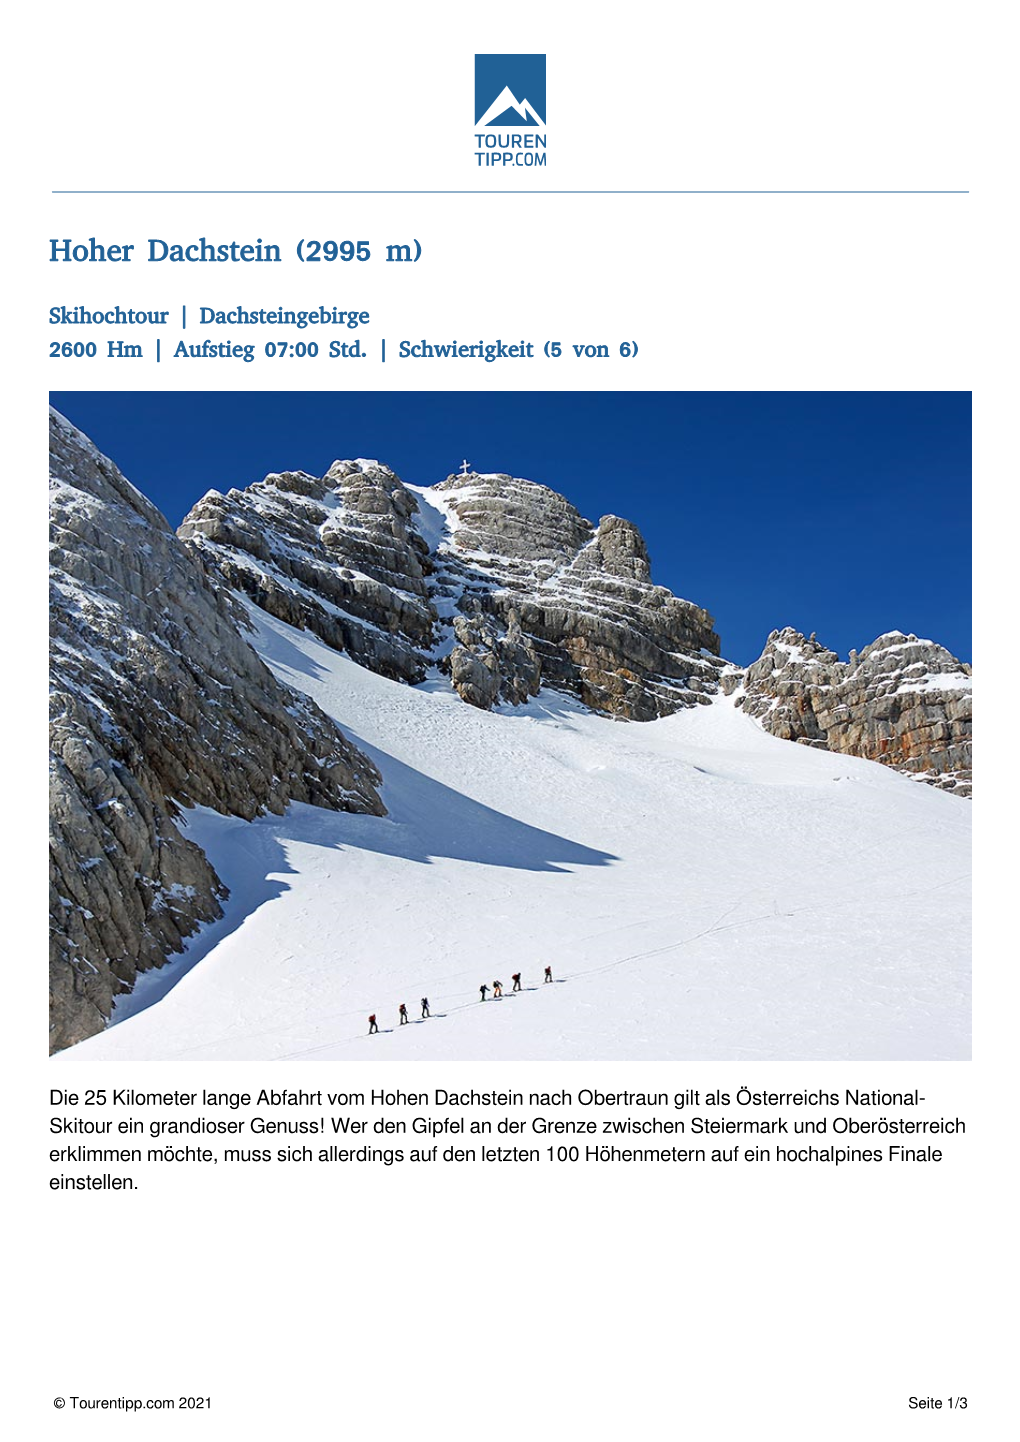 Hoher Dachstein (2995 M)